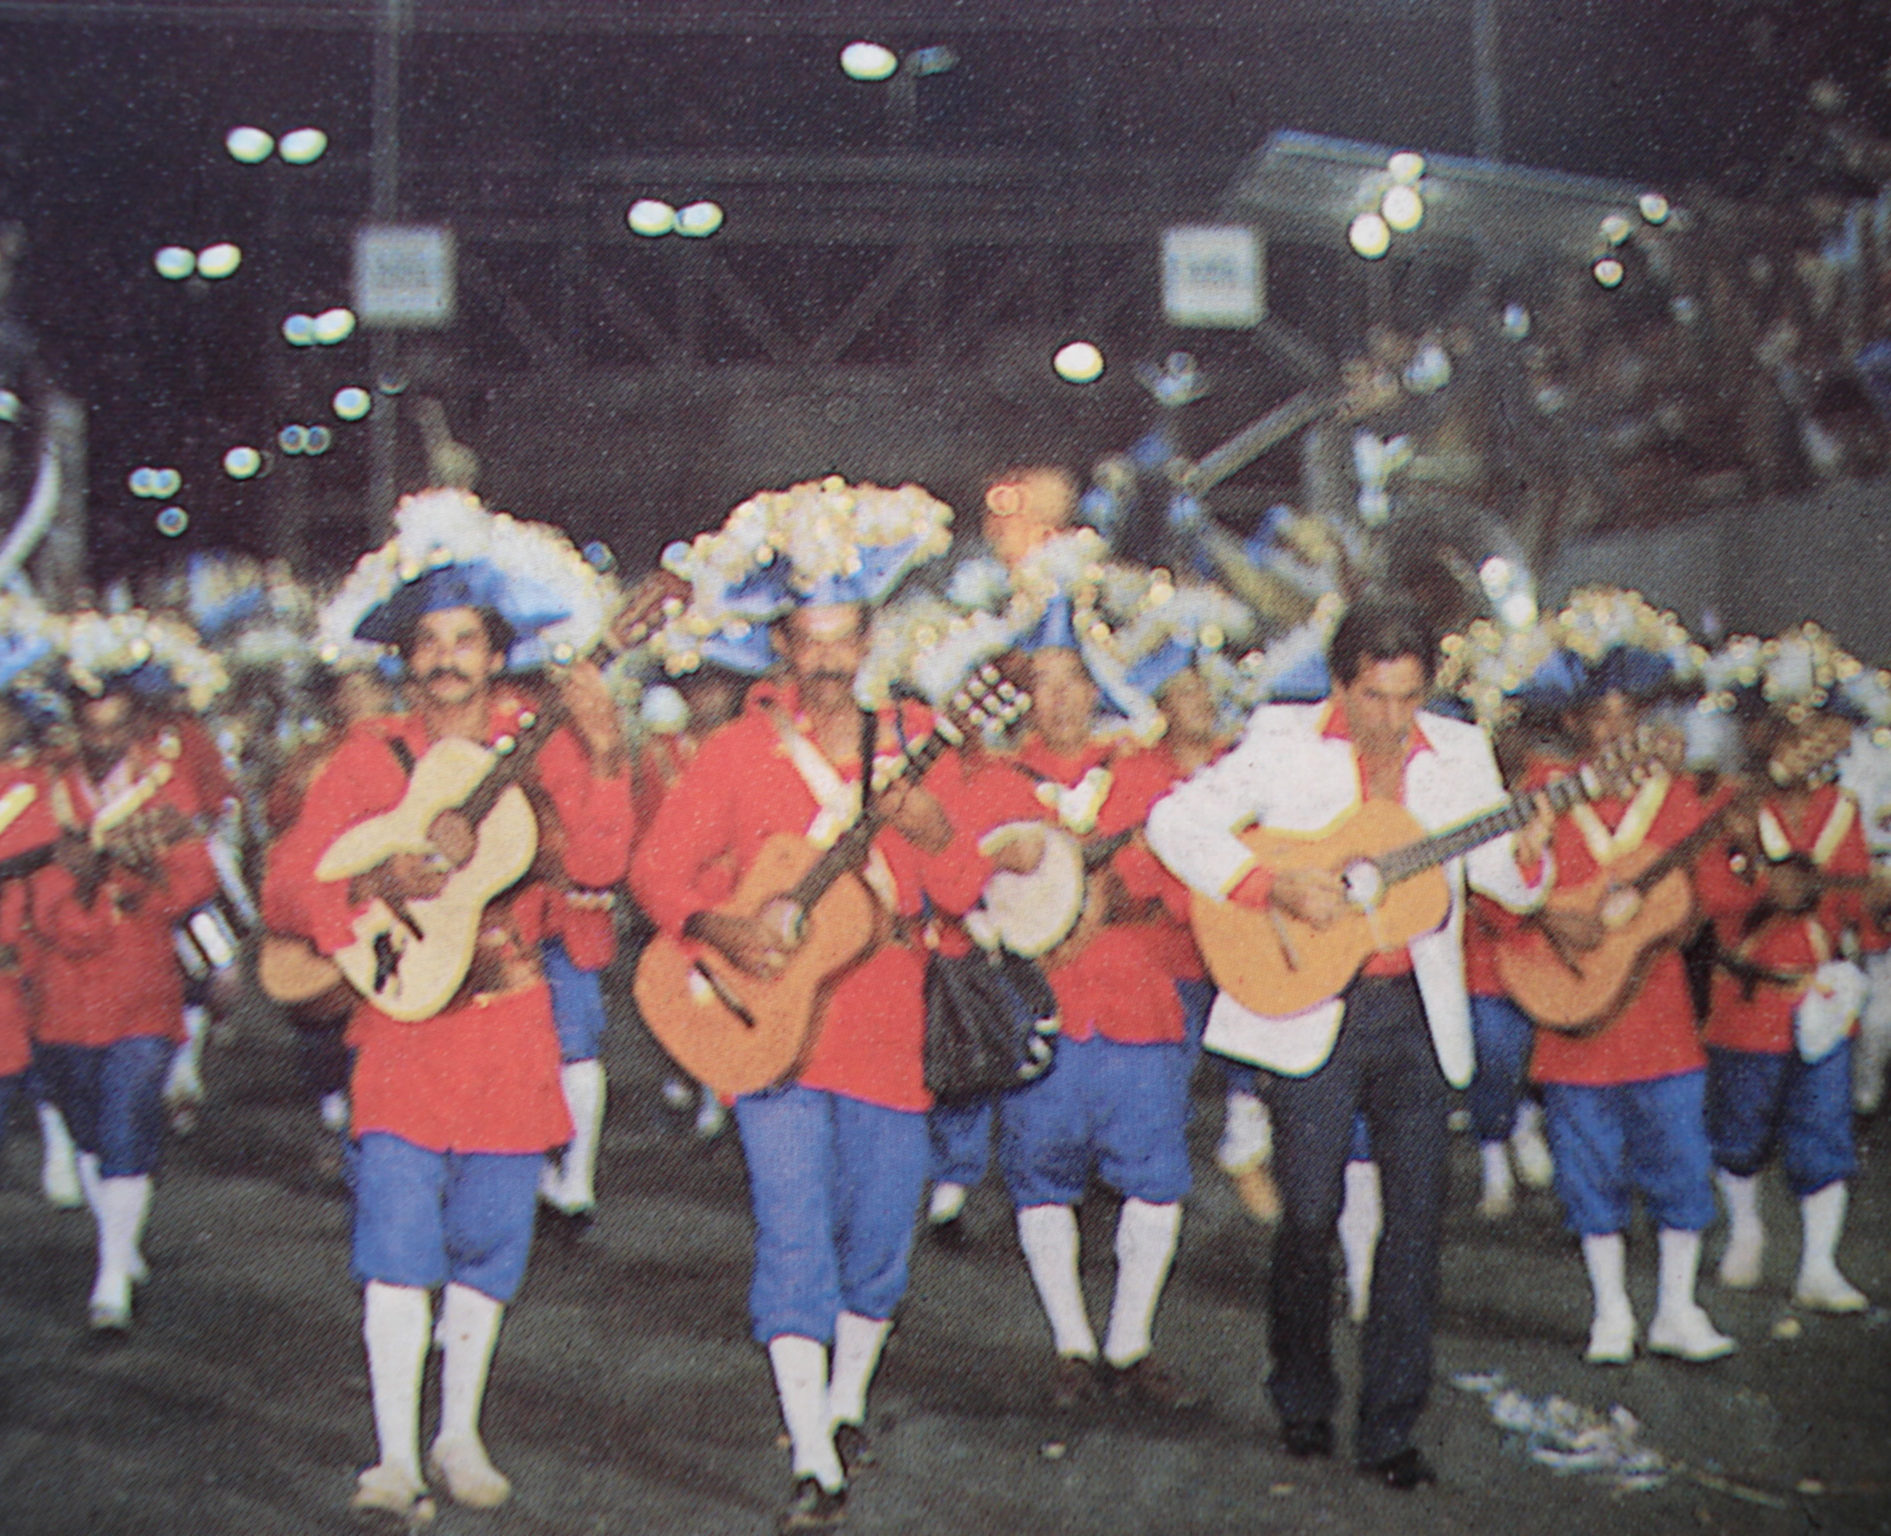 desfile de carnaval, vários homens trajados a rigor, calças, meias e chapéu Sombrero